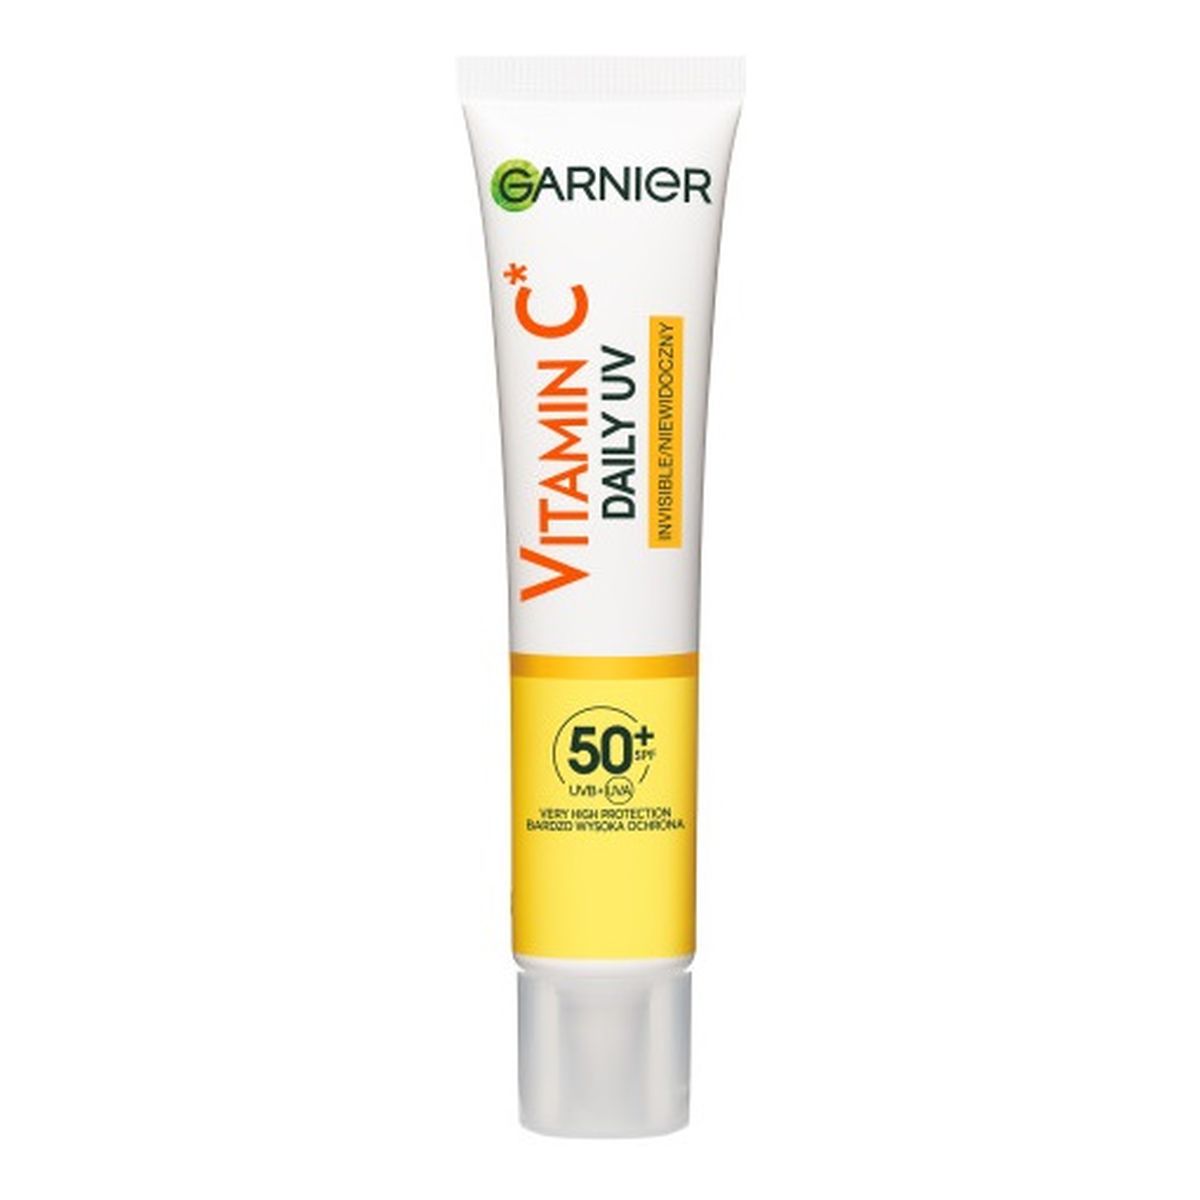 Garnier Vitamin c rozświetlający fluid na dzień z filtrem spf50+ niewidoczny 40ml